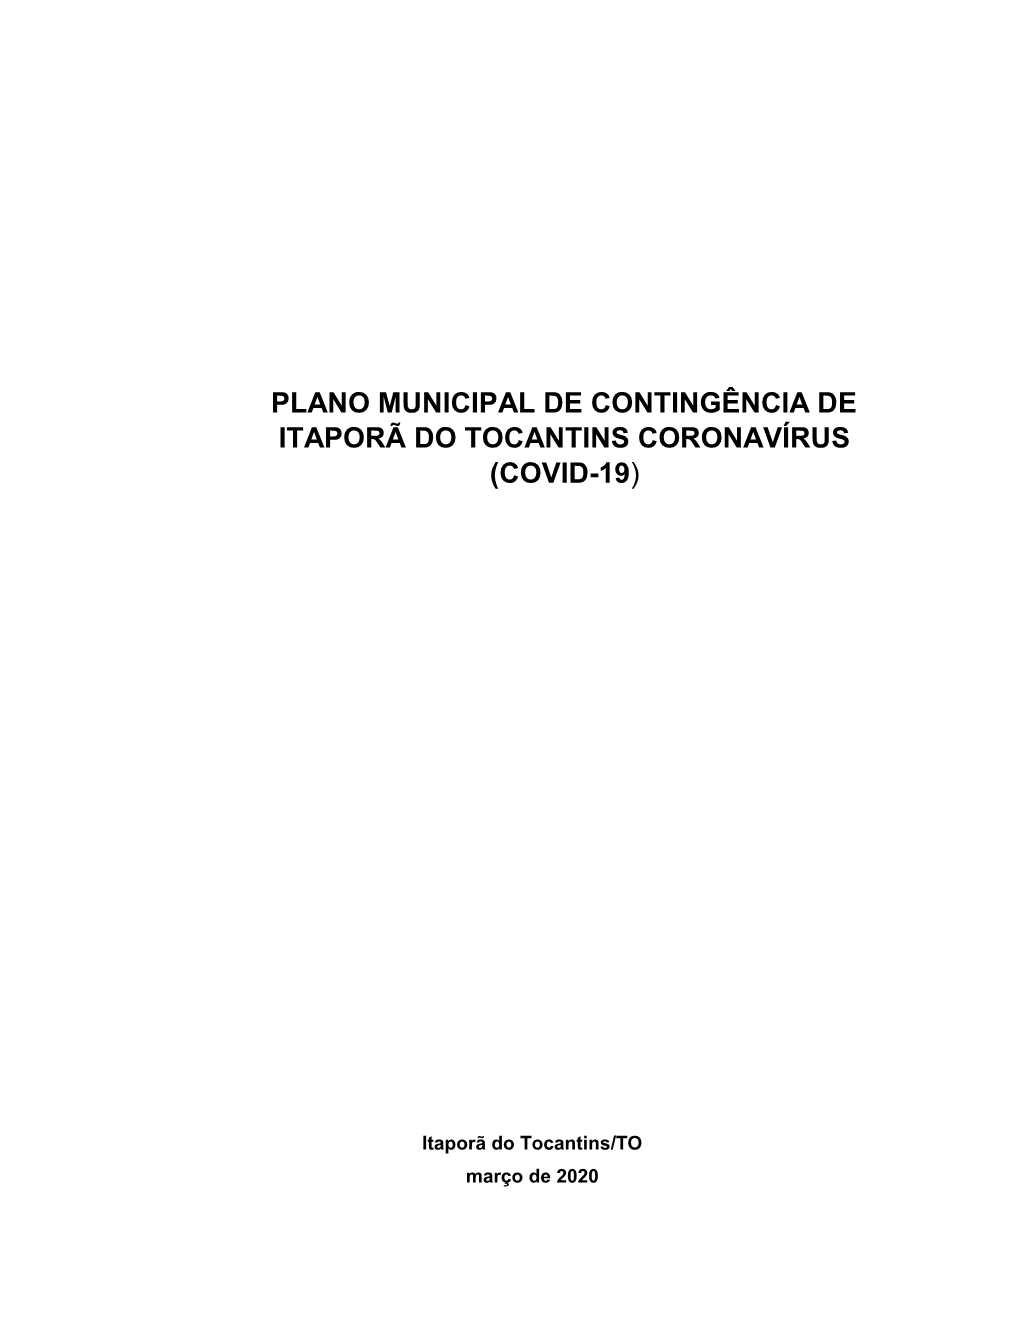 Plano Municipal De Contingência De Itaporã Do Tocantins Coronavírus (Covid-19)